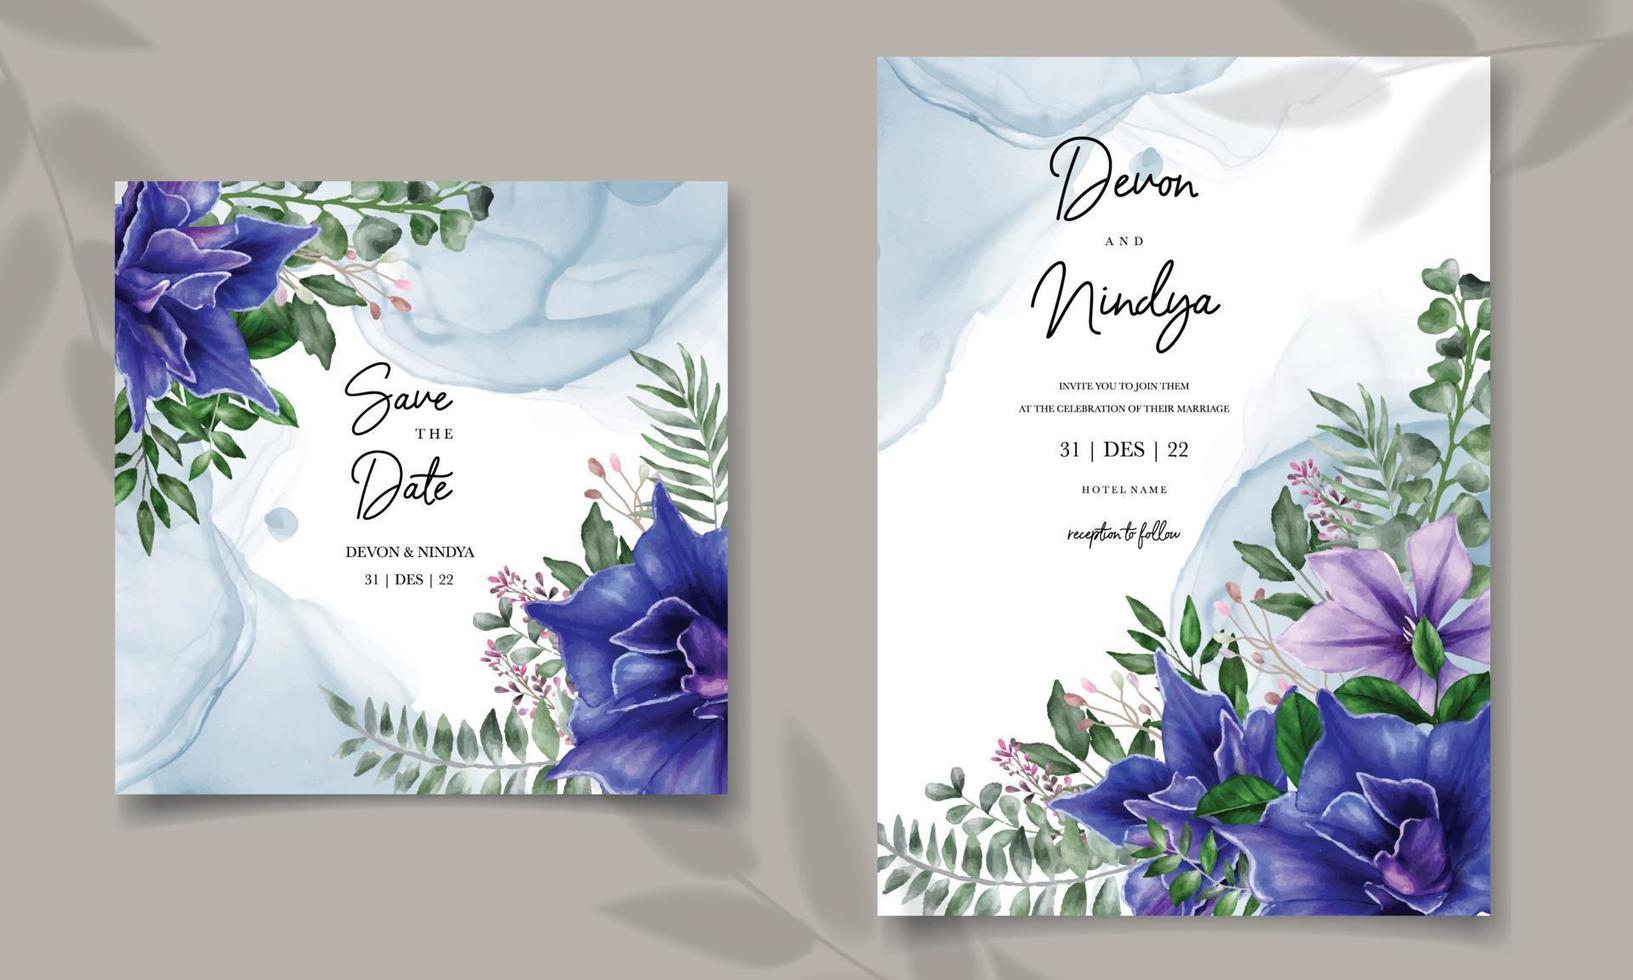 invitación de boda con hermosa decoración floral vector